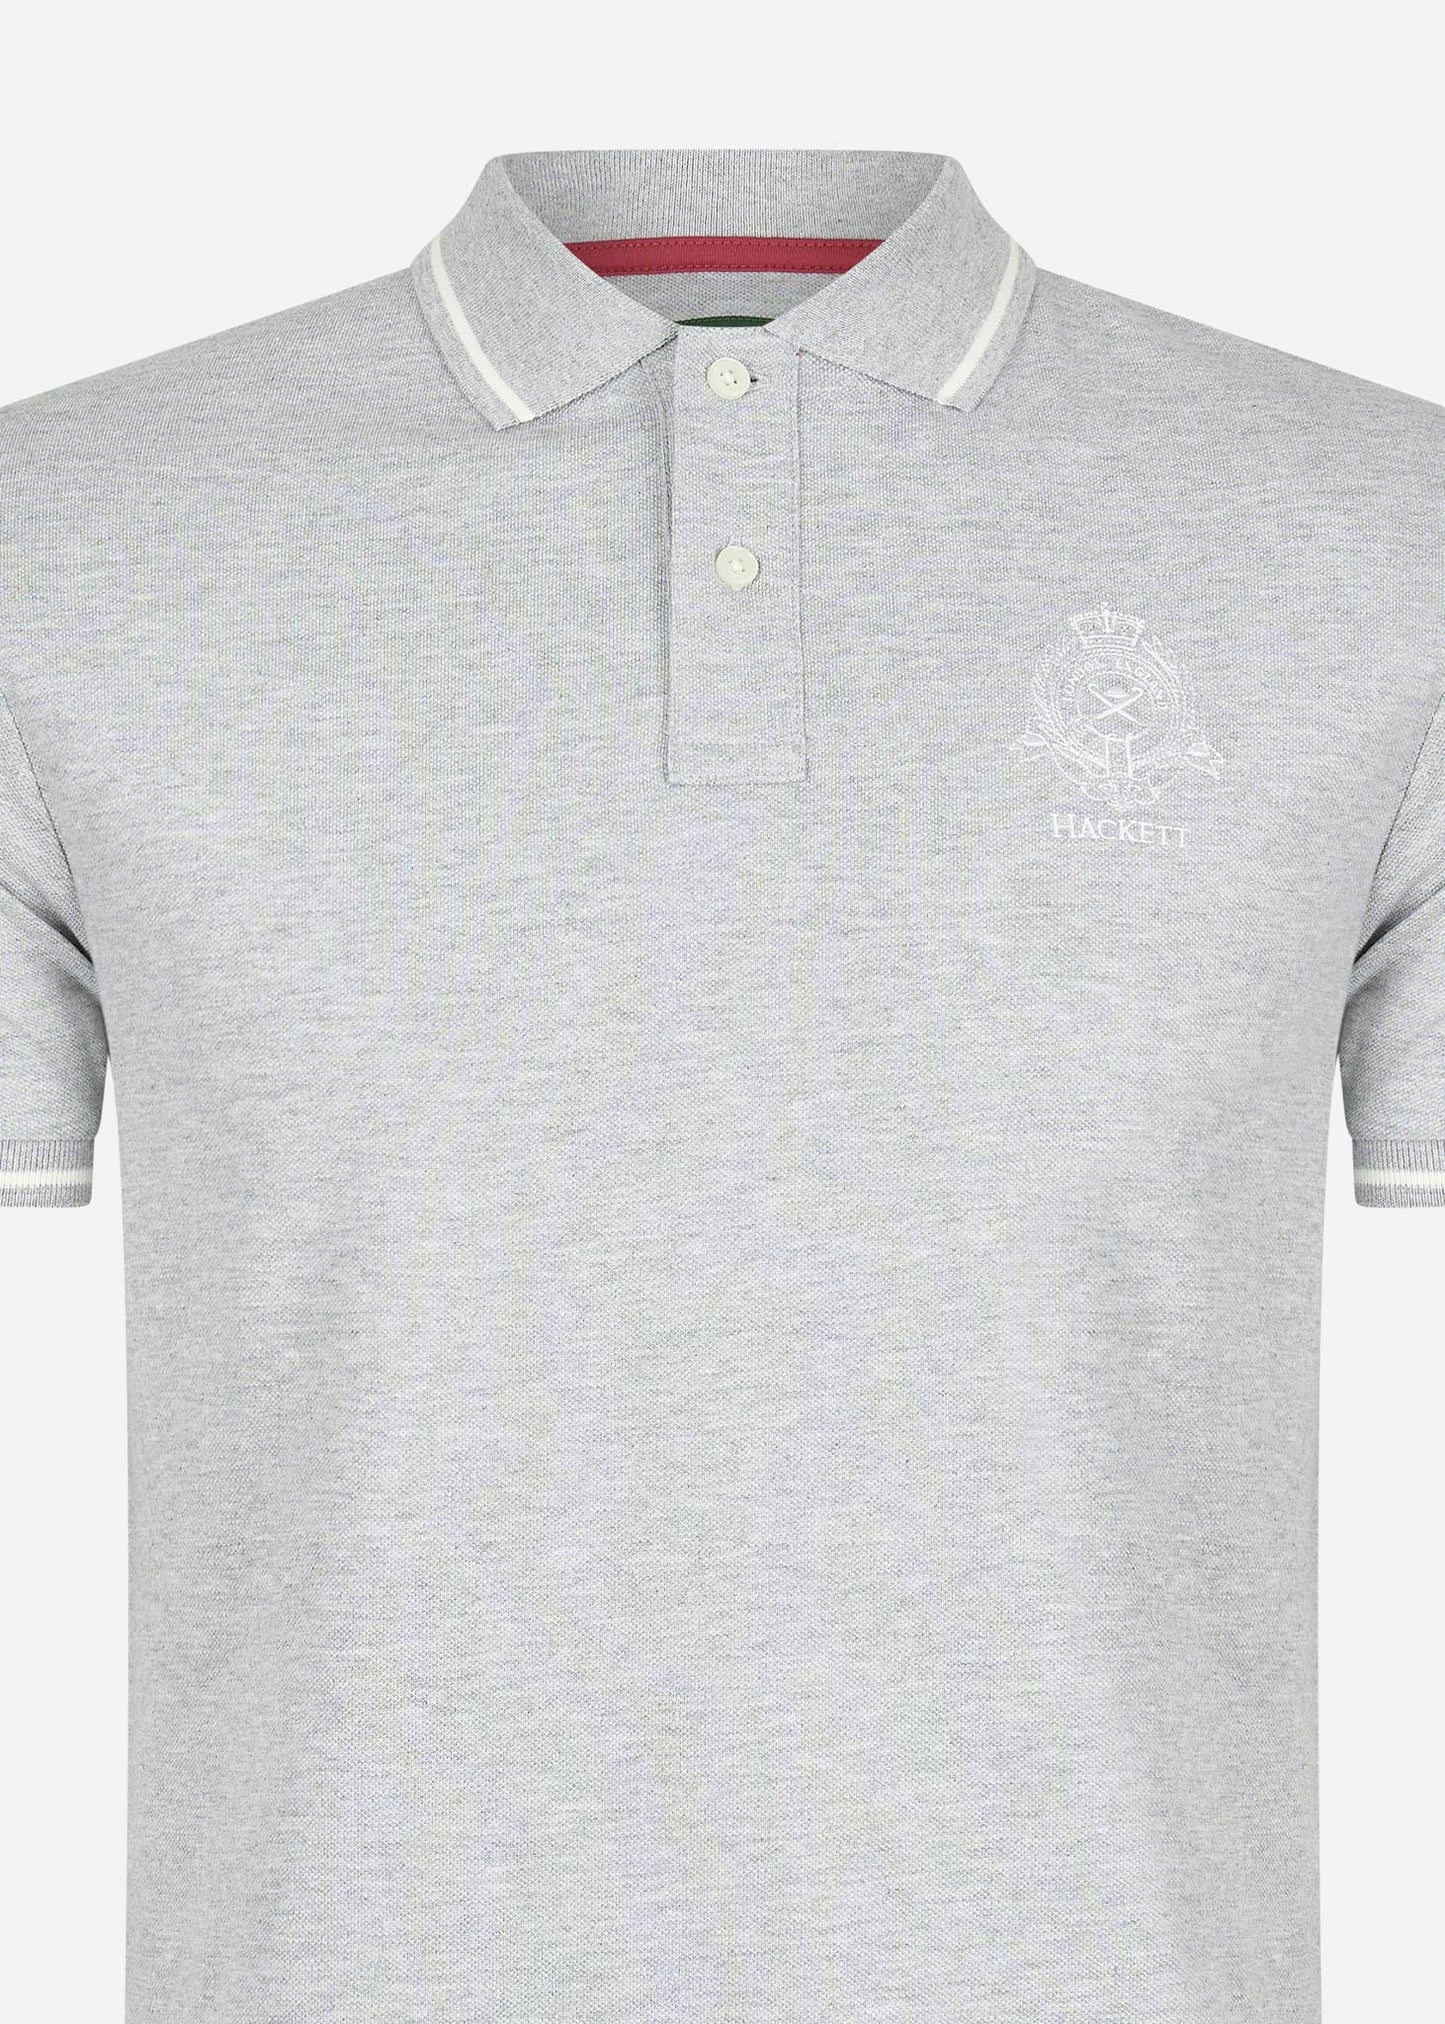 Hackett London Polo's  Heritage logo polo - grey marl 